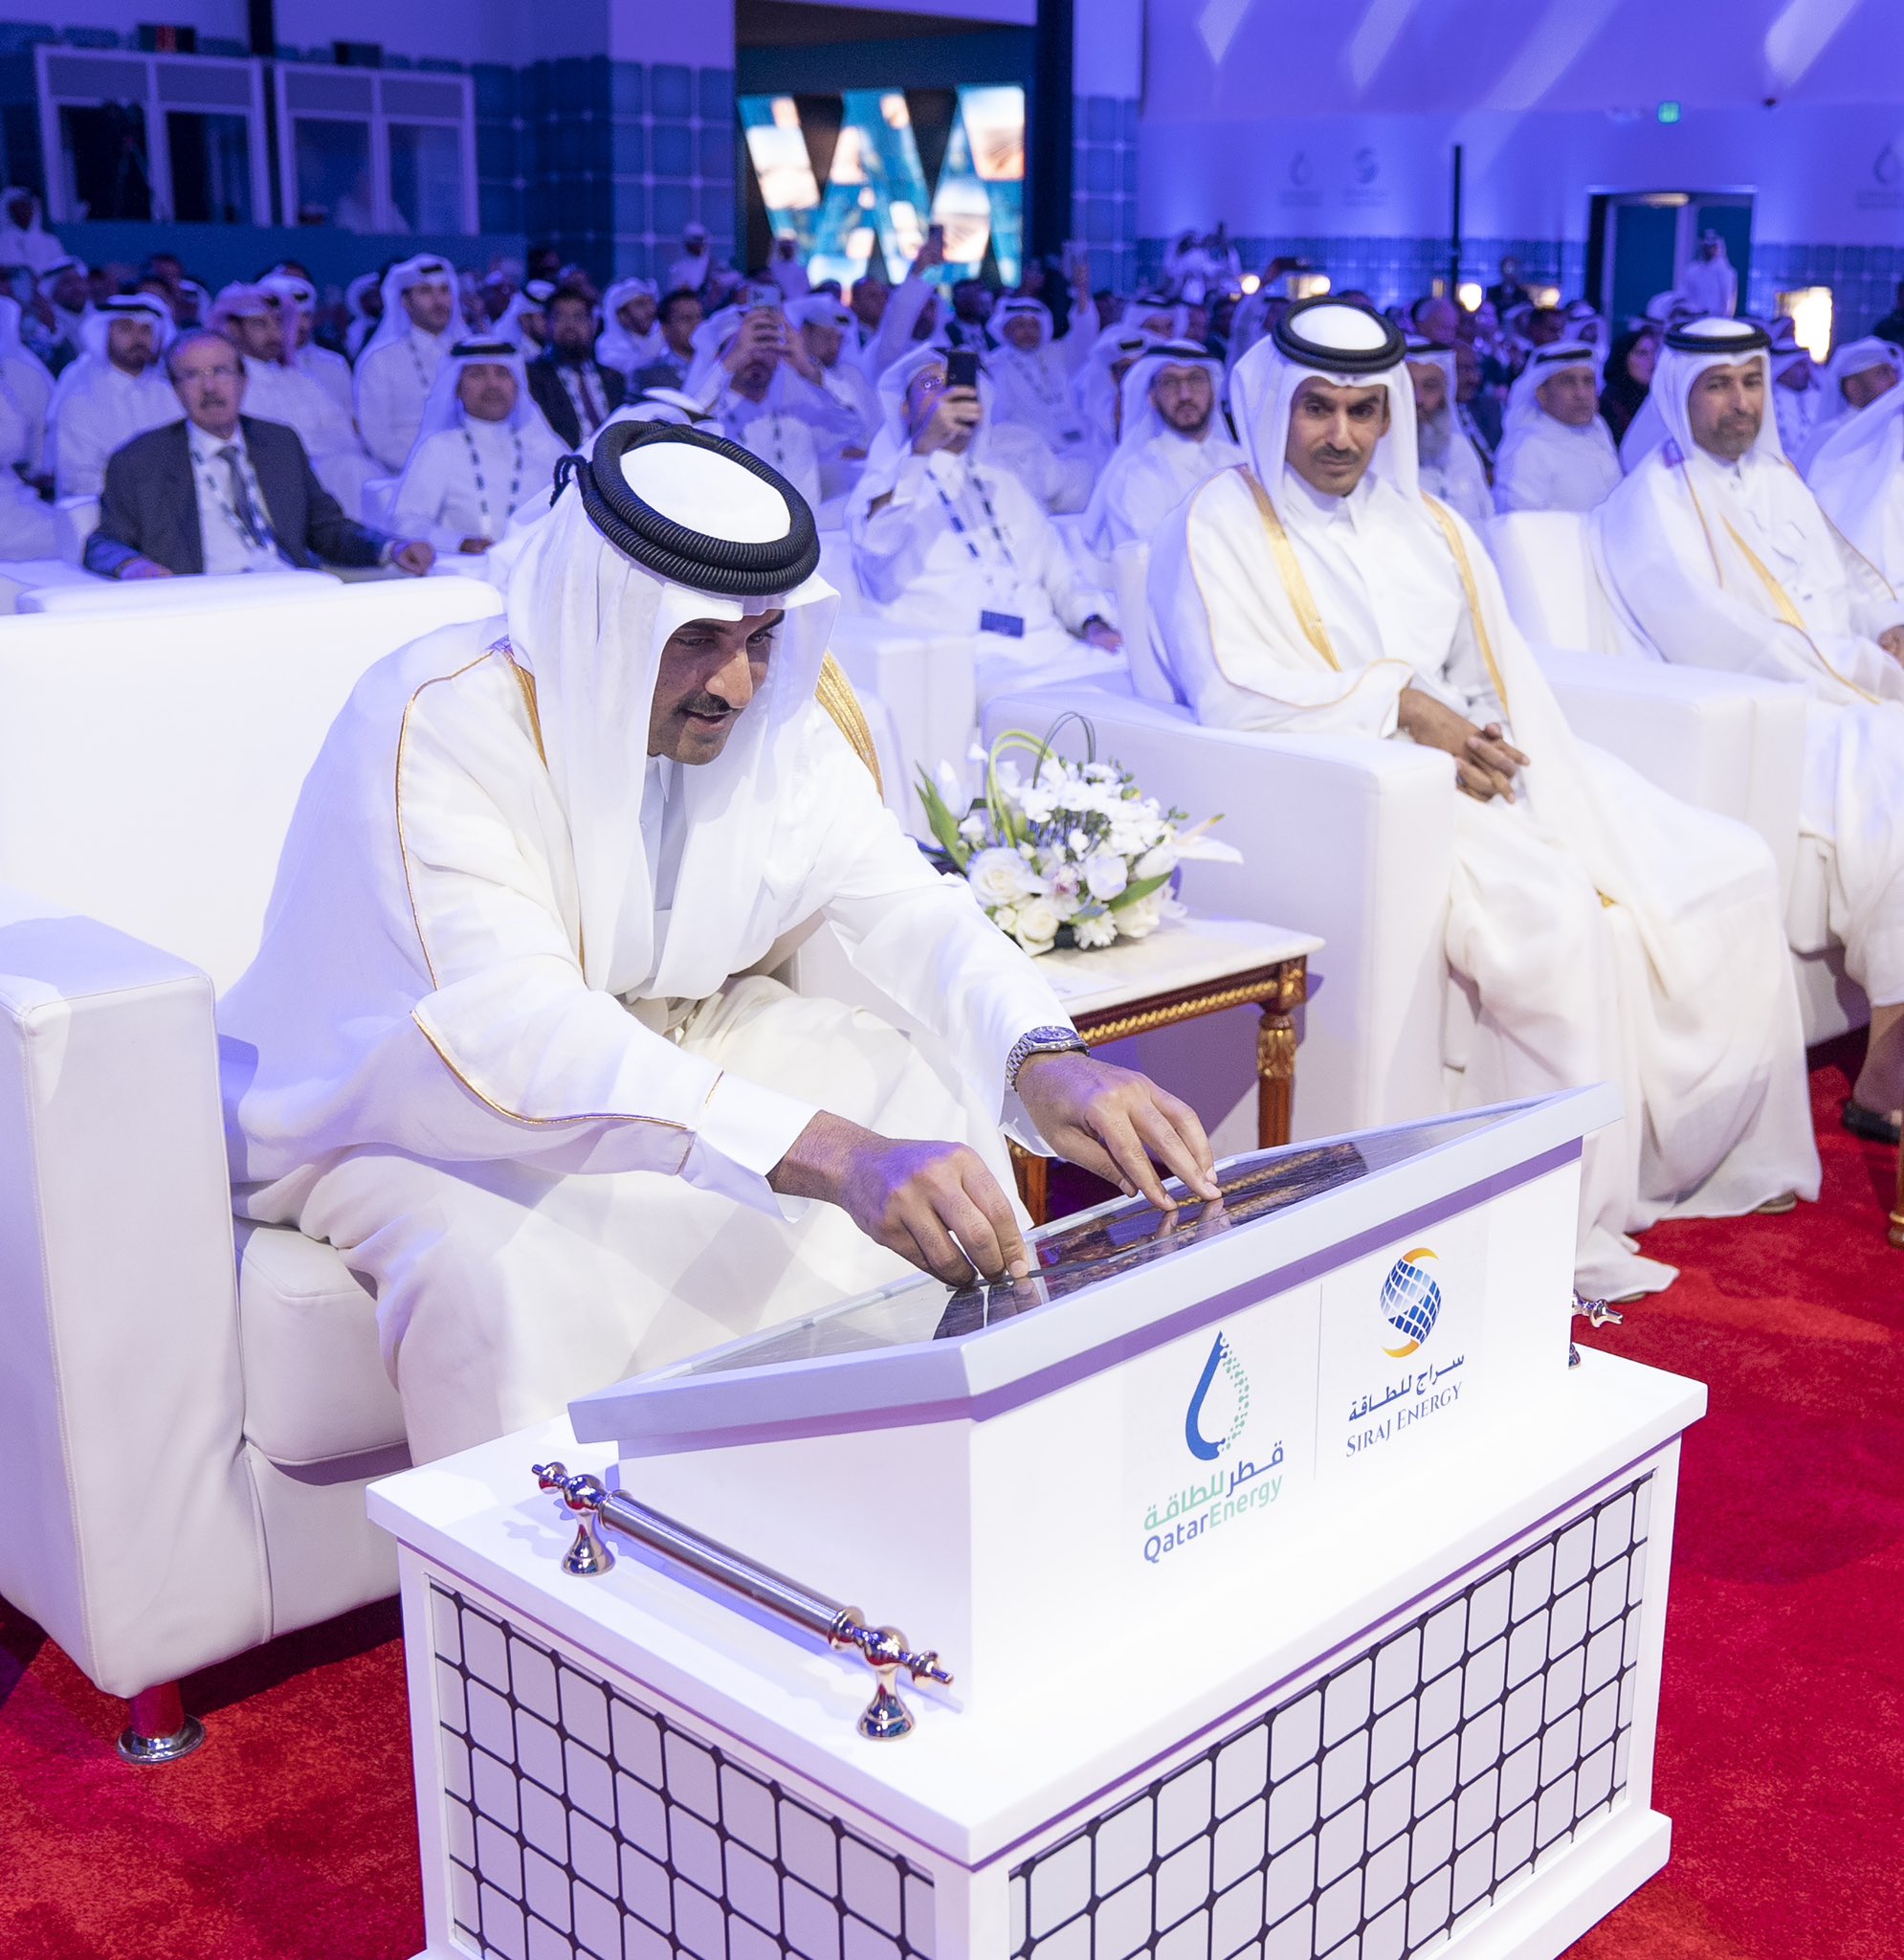 من مراسم تدشين أول محطة طاقة شمسية في قطر - الصورة من وكالة أنباء قطر (18 أكتوبر 2022)